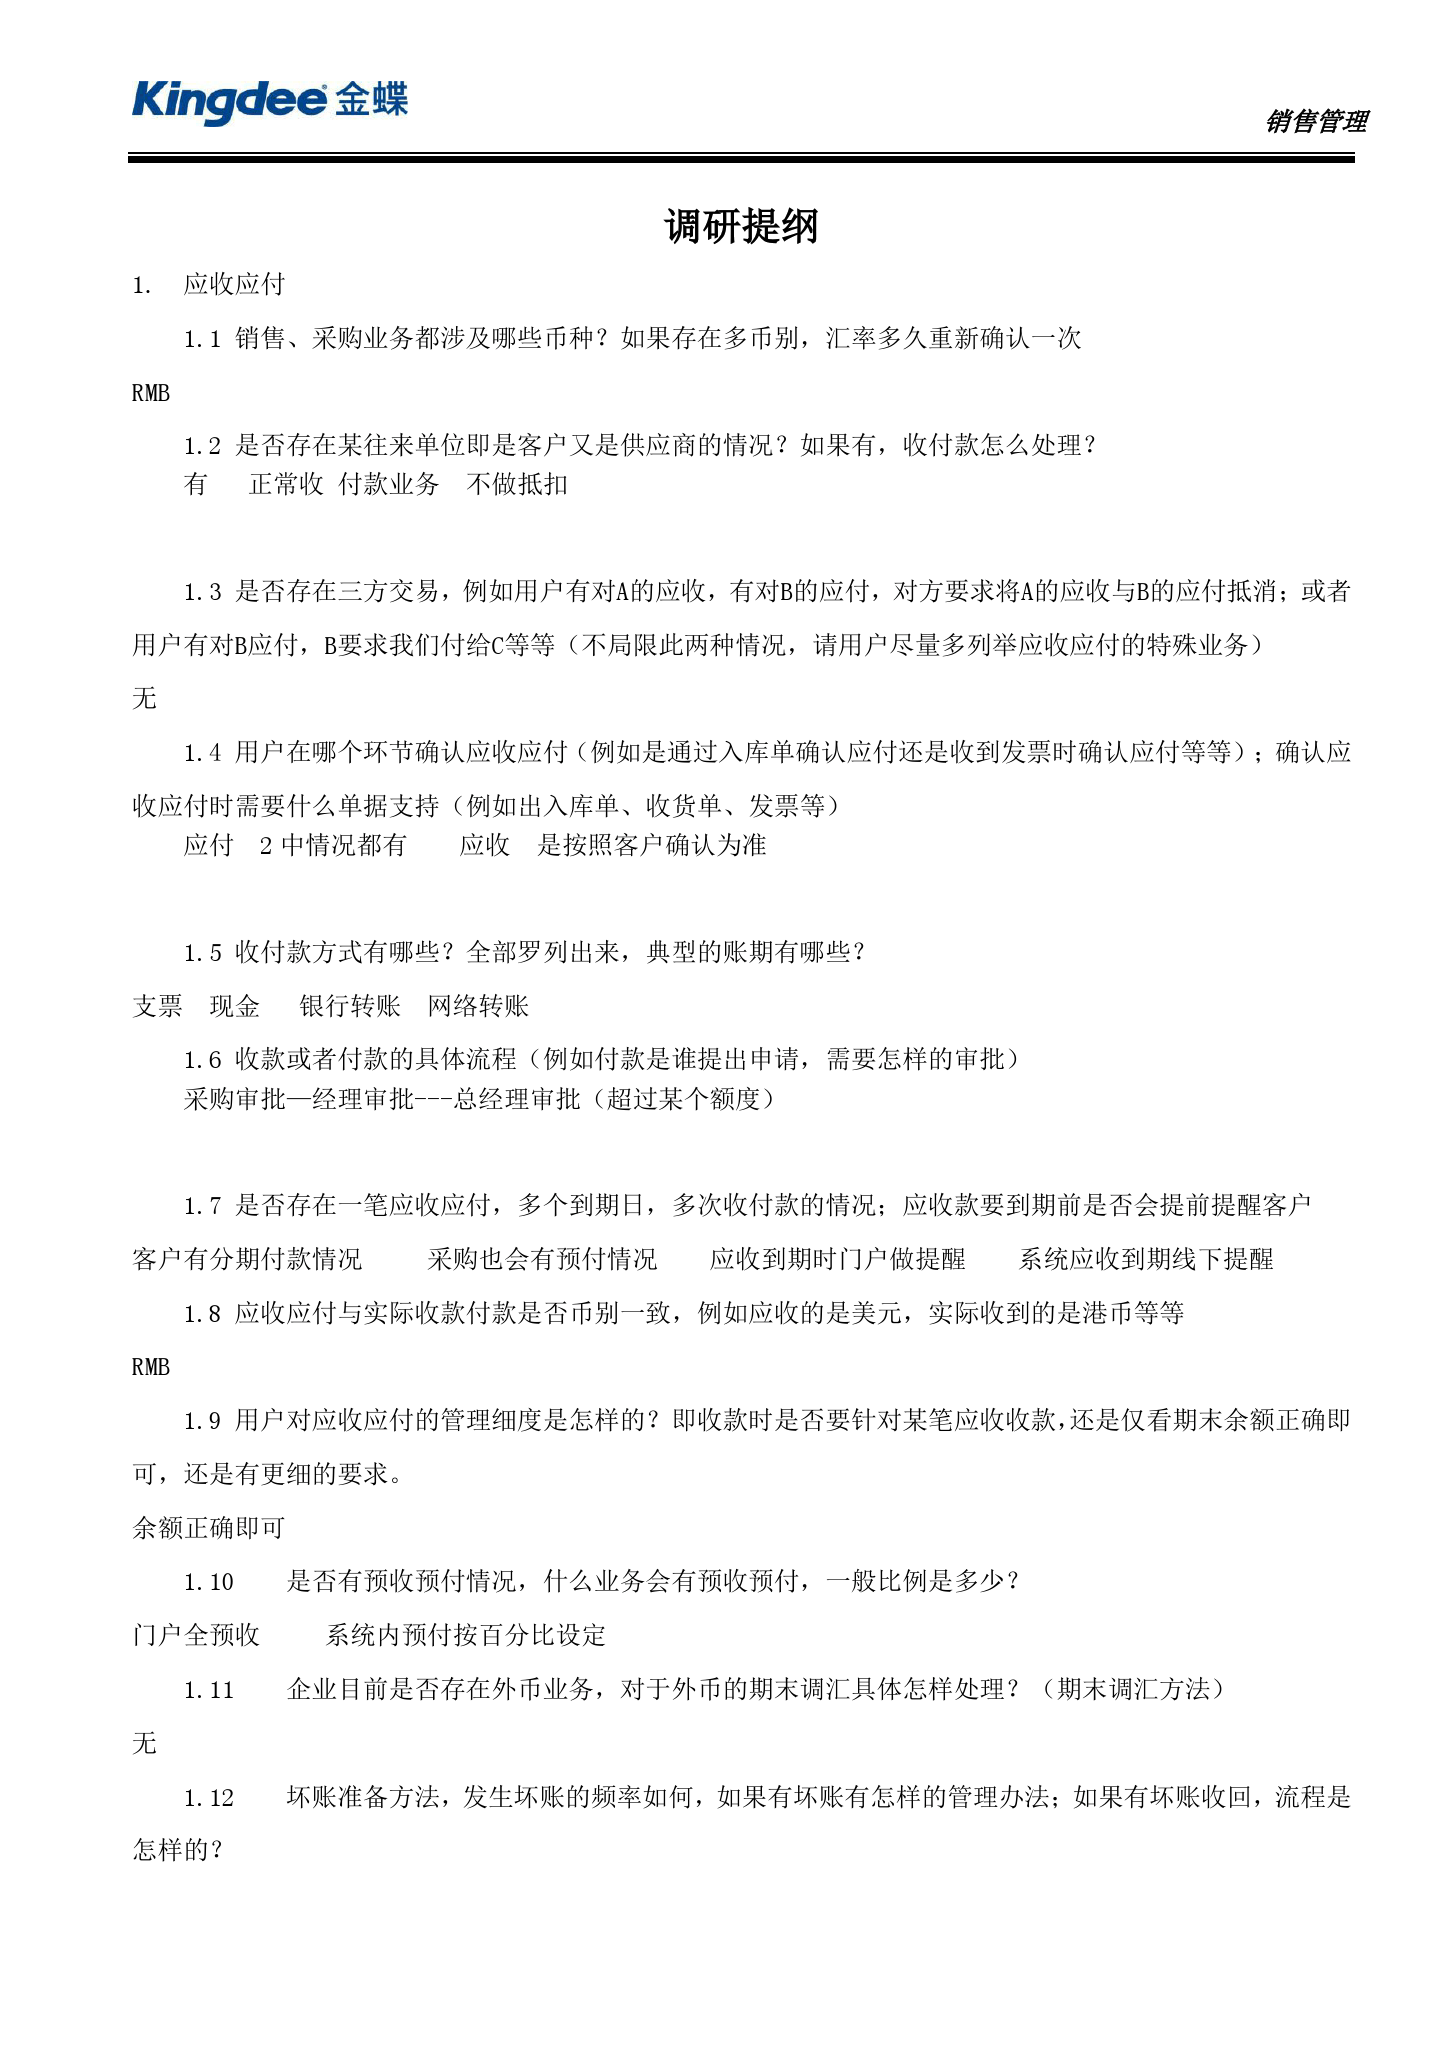 金蝶云社区-JX2102 调研提纲-财务模块